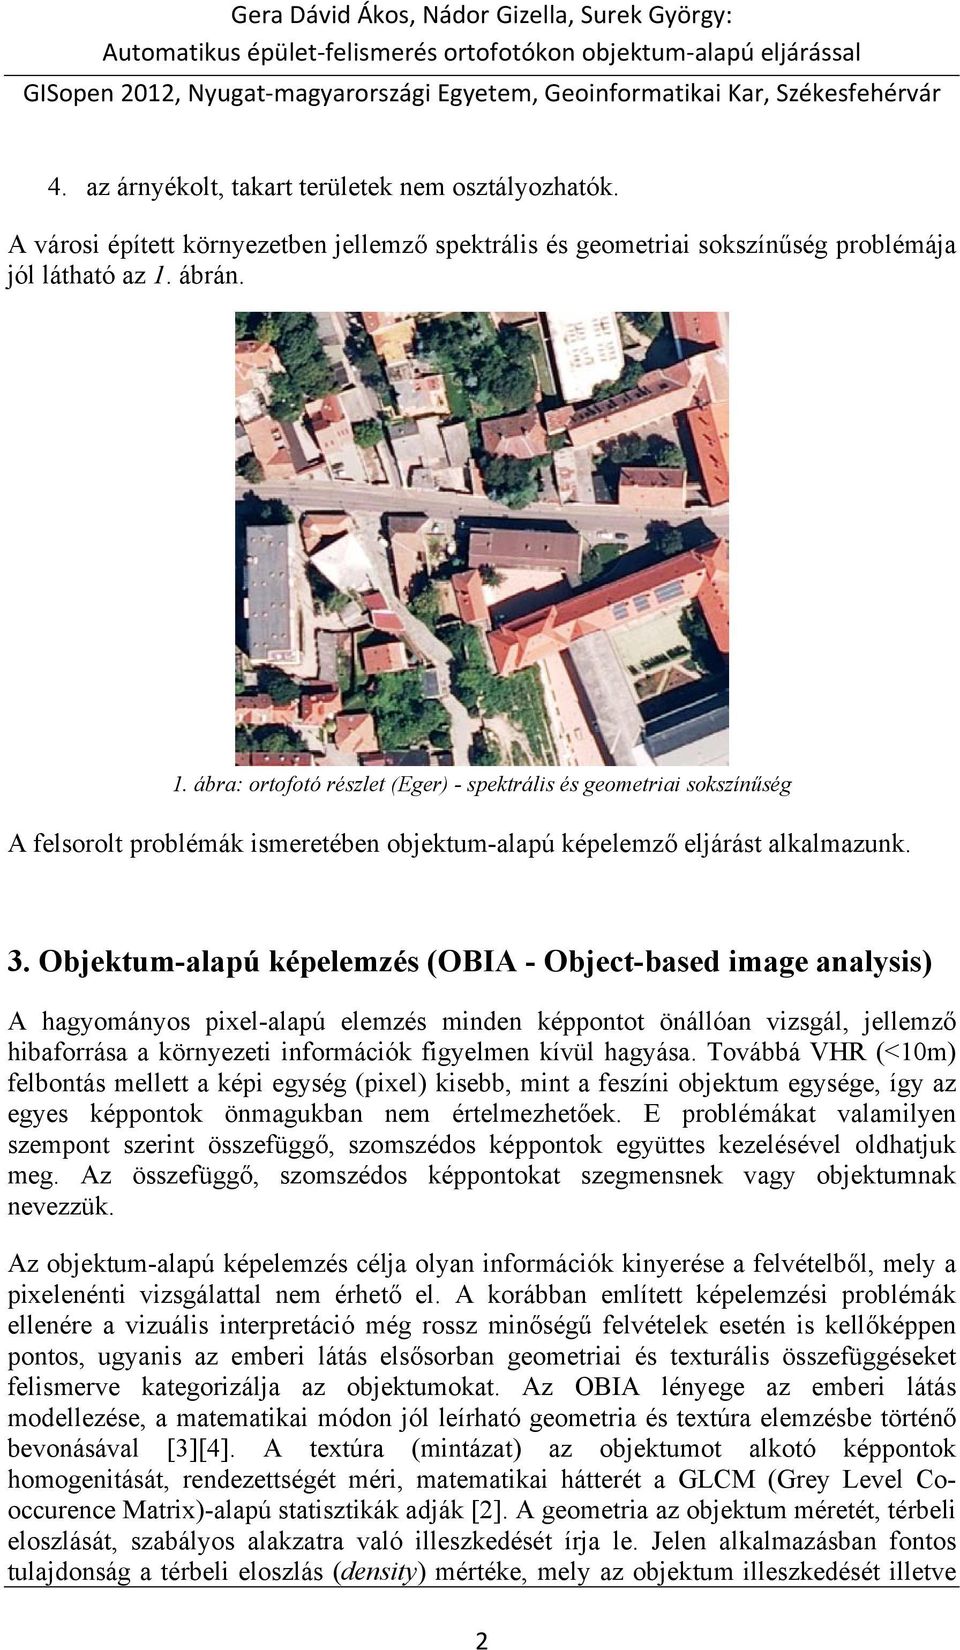 Objektum-alapú képelemzés (OBIA - Object-based image analysis) A hagyományos pixel-alapú elemzés minden képpontot önállóan vizsgál, jellemző hibaforrása a környezeti információk figyelmen kívül